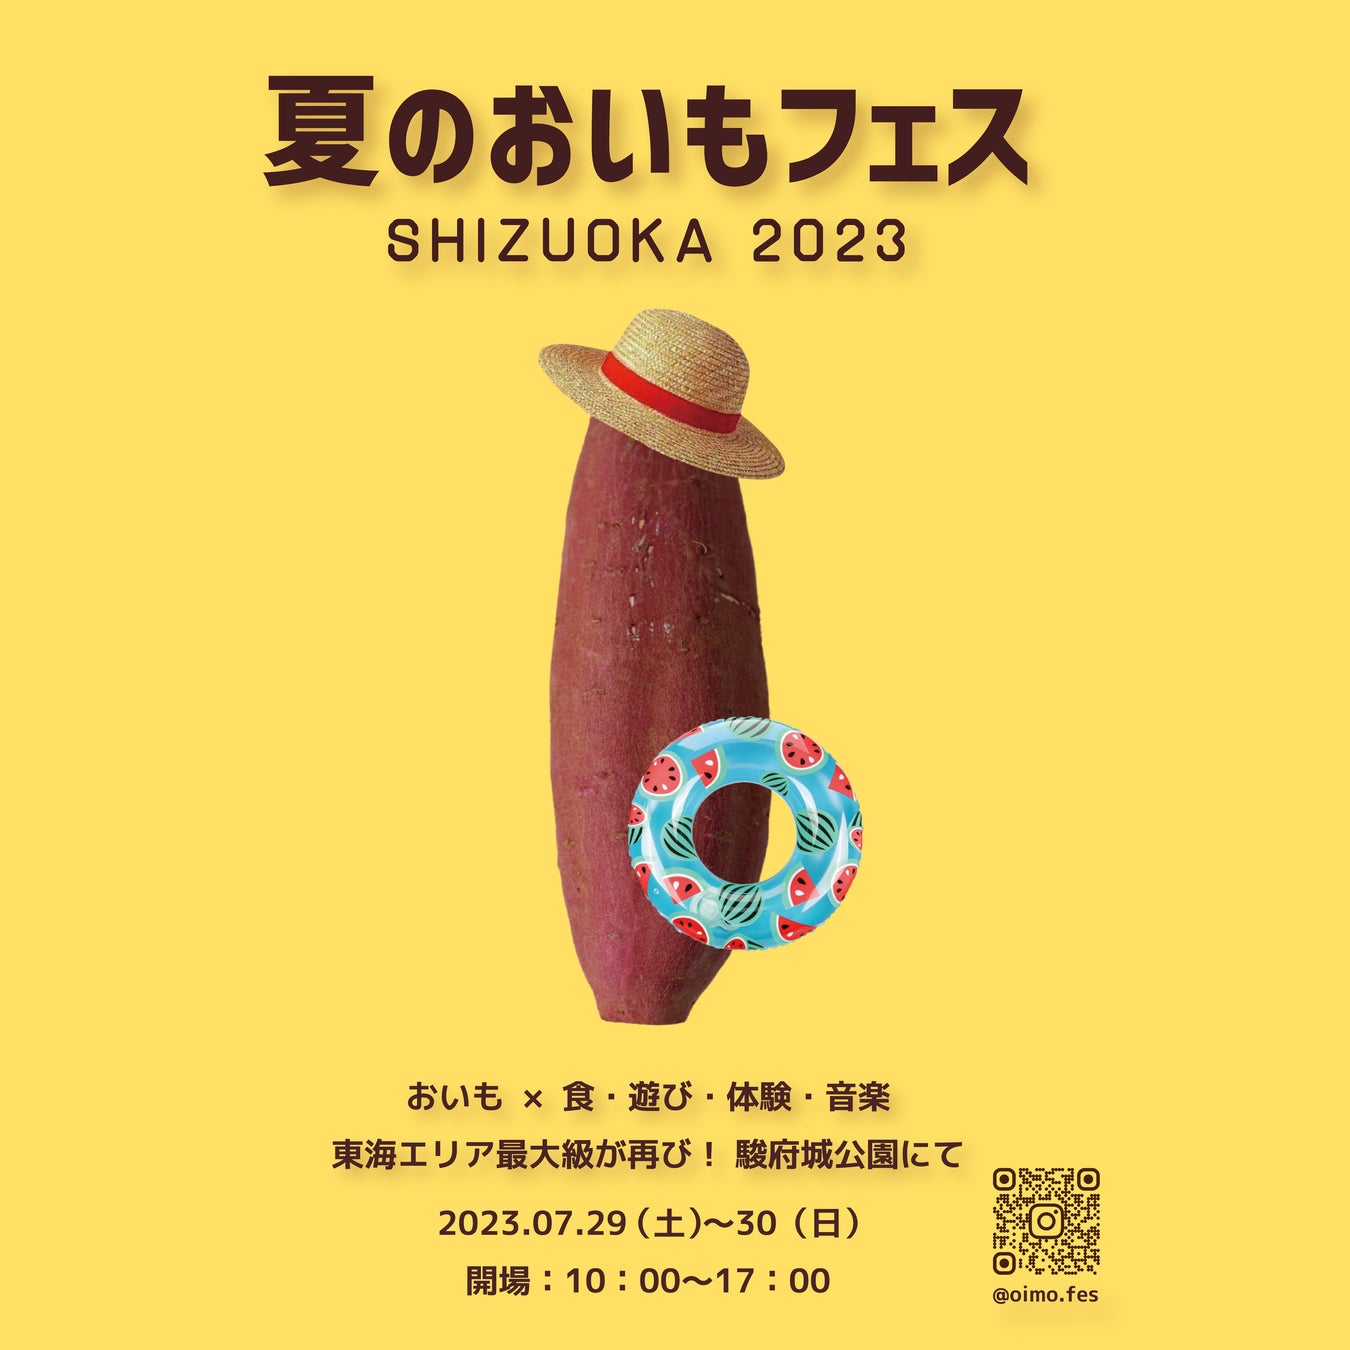 夏休みのお出かけスポット！！夏のおいもフェス SHIZUOKA 2023《東海エリア最大級の焼き芋イベント》出店者が決定！80店舗以上が集結。7月29・30日開催！